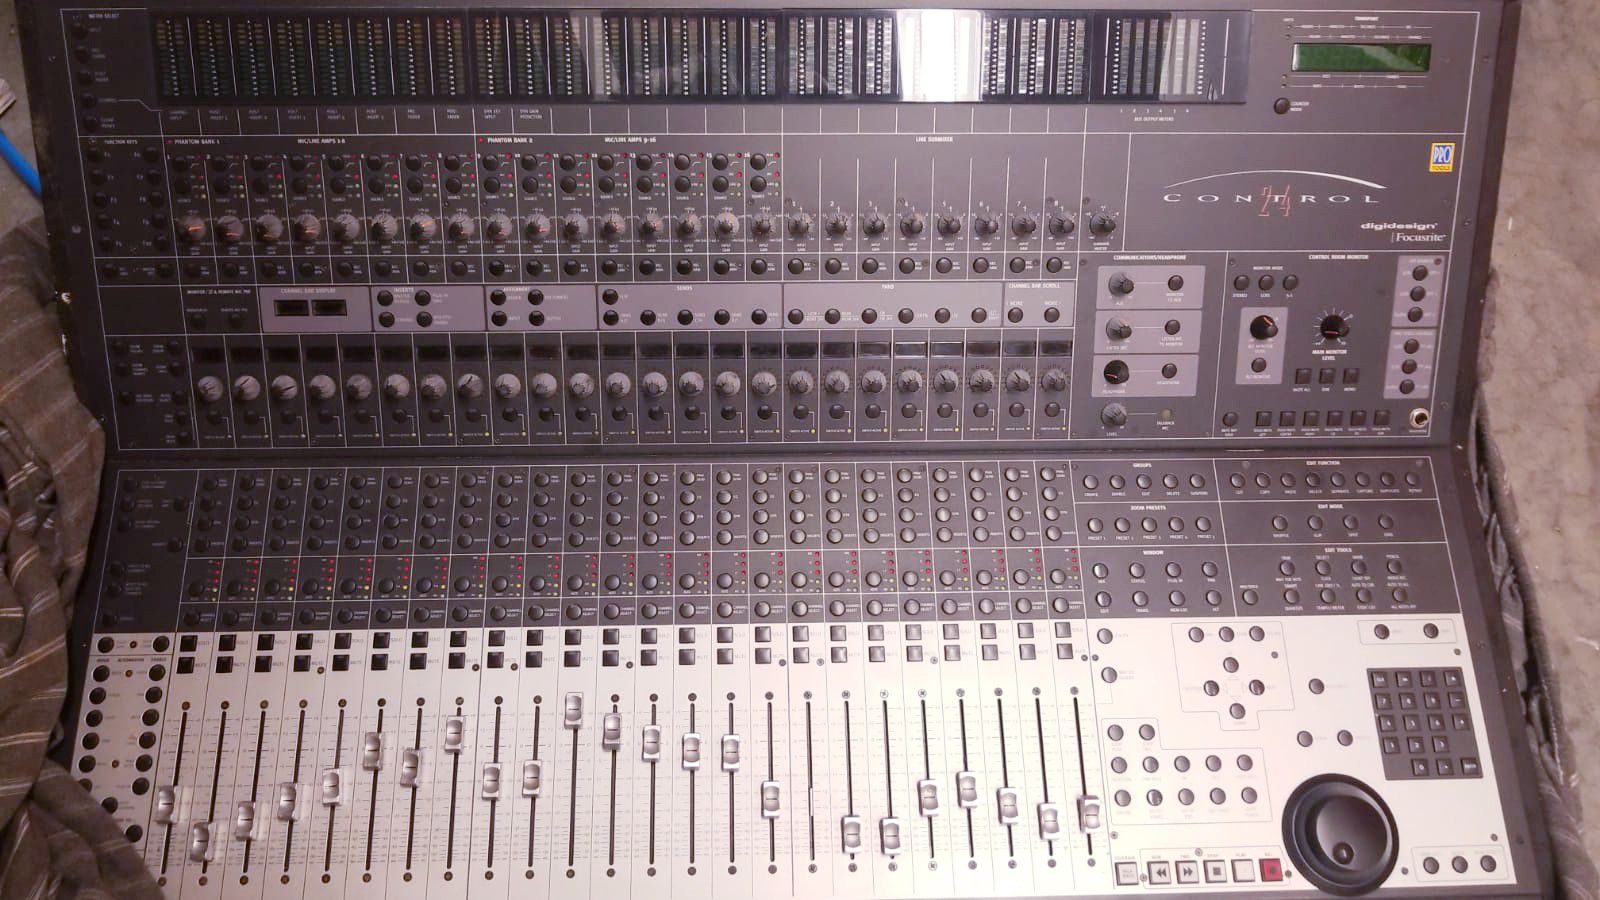 Studio Avid Pro tools Control 24 mixer!